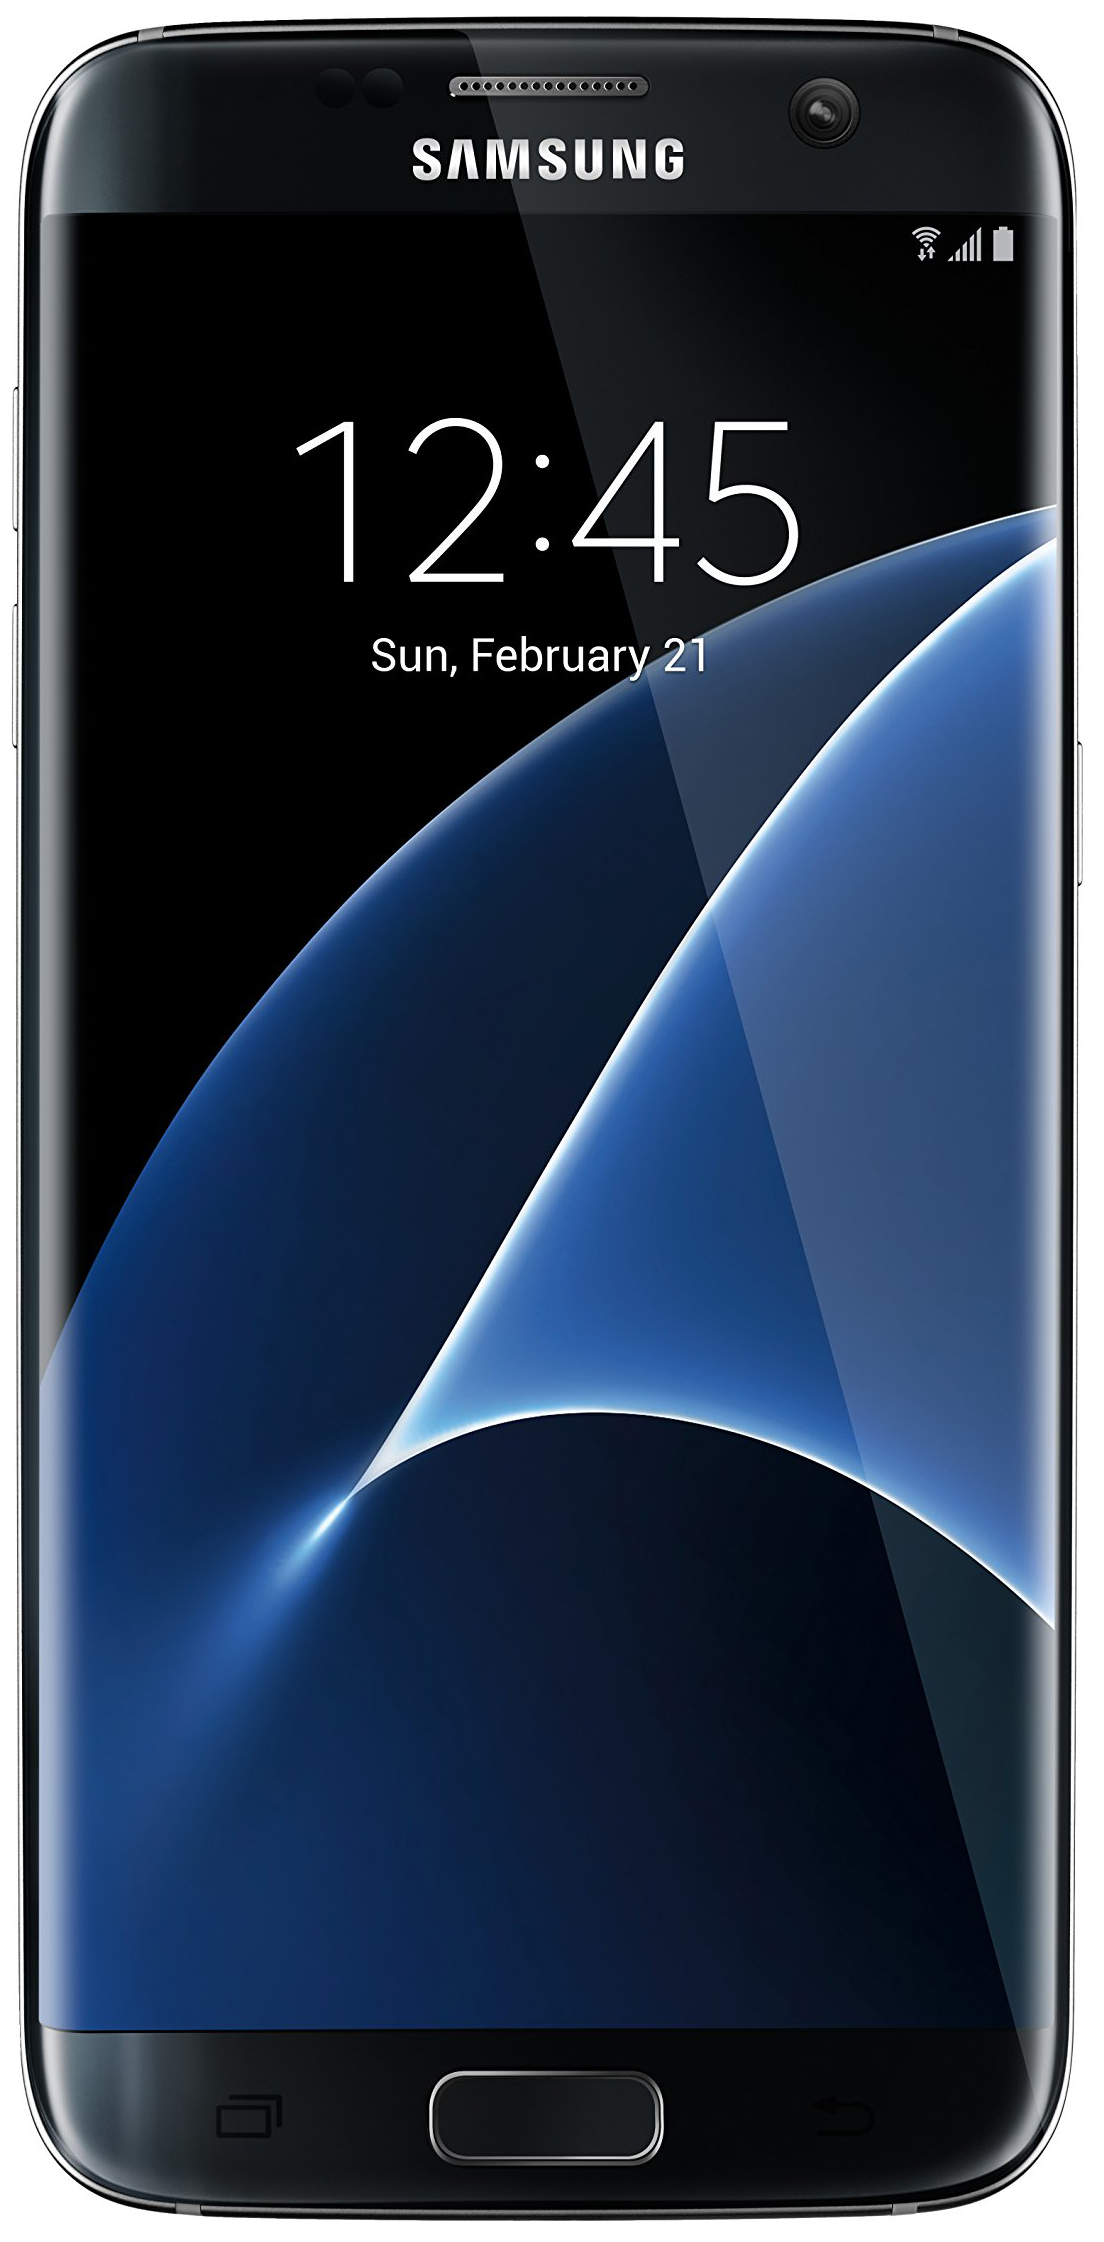 Samsung Galaxy S7 Edge là chiếc điện thoại thông minh cực mạnh mẽ với nhiều tính năng đáng ngưỡng mộ. Hãy cùng khám phá những hình ảnh đẹp mắt về sản phẩm này và cảm nhận sự khác biệt.